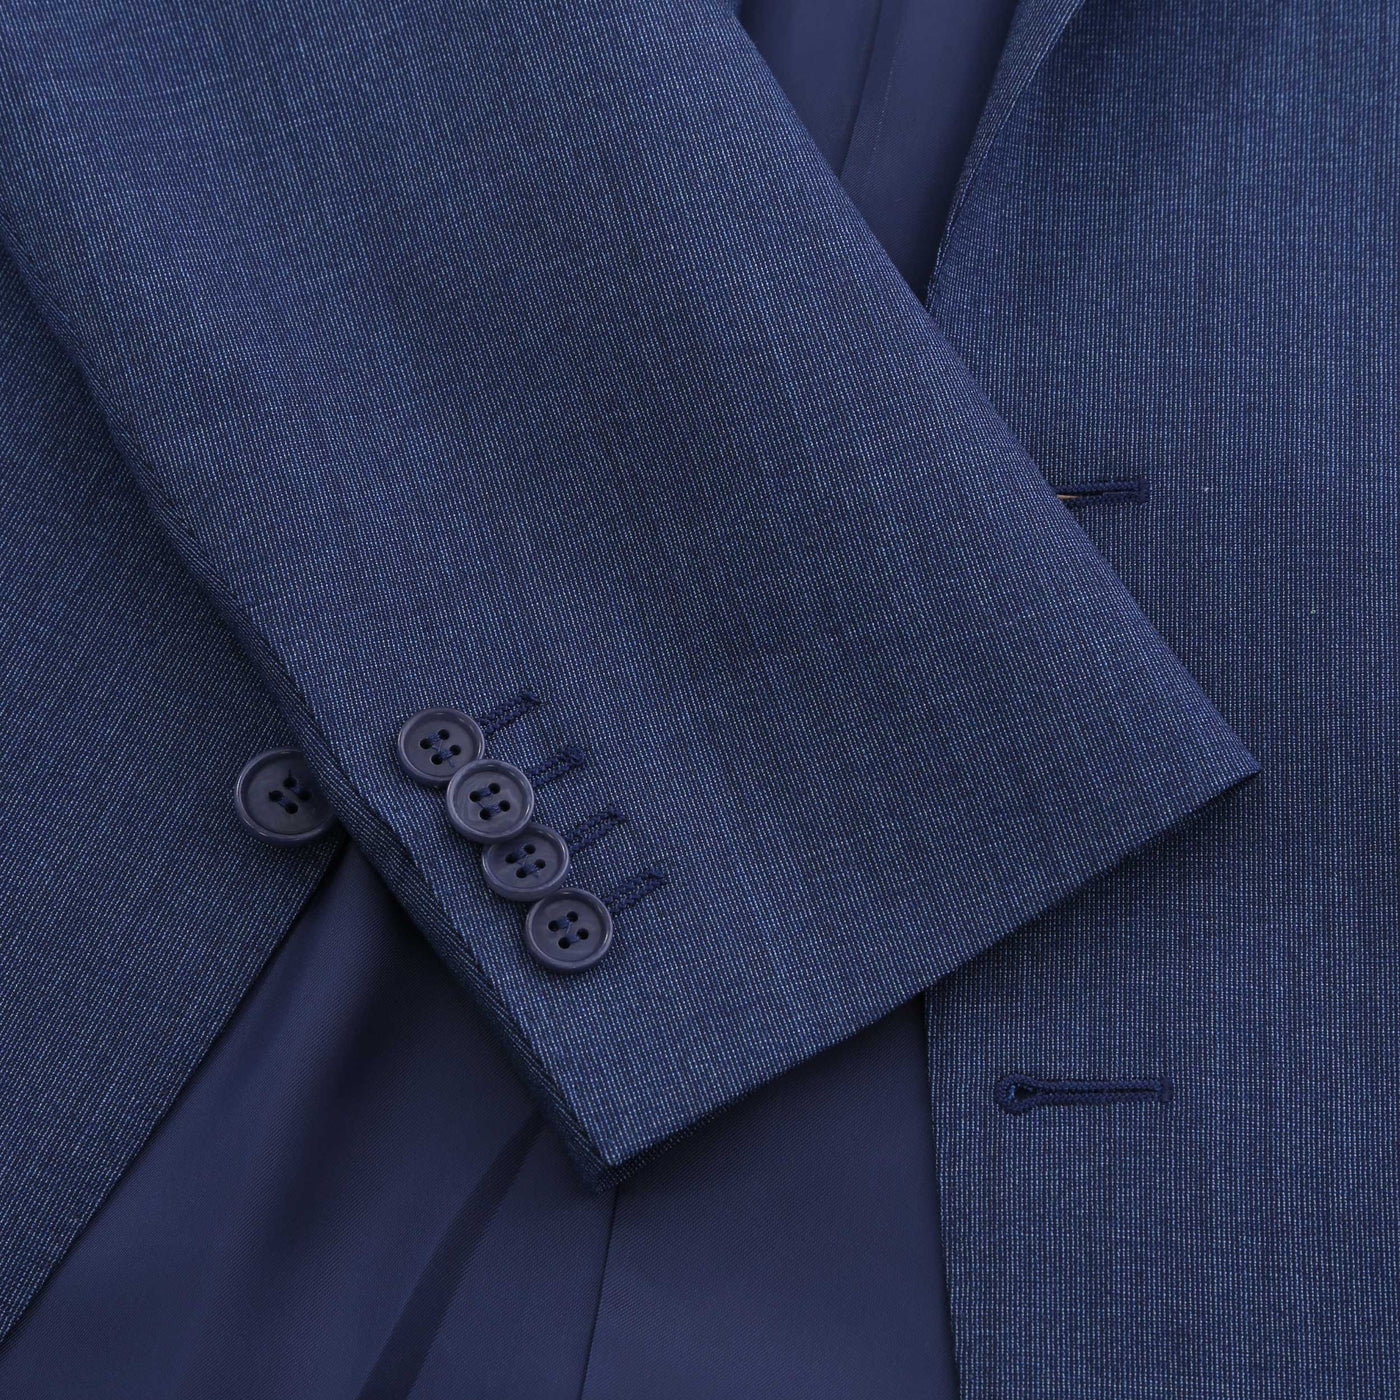 Canali Peak Lapel Stretch Suit in Denim Blue Cuff